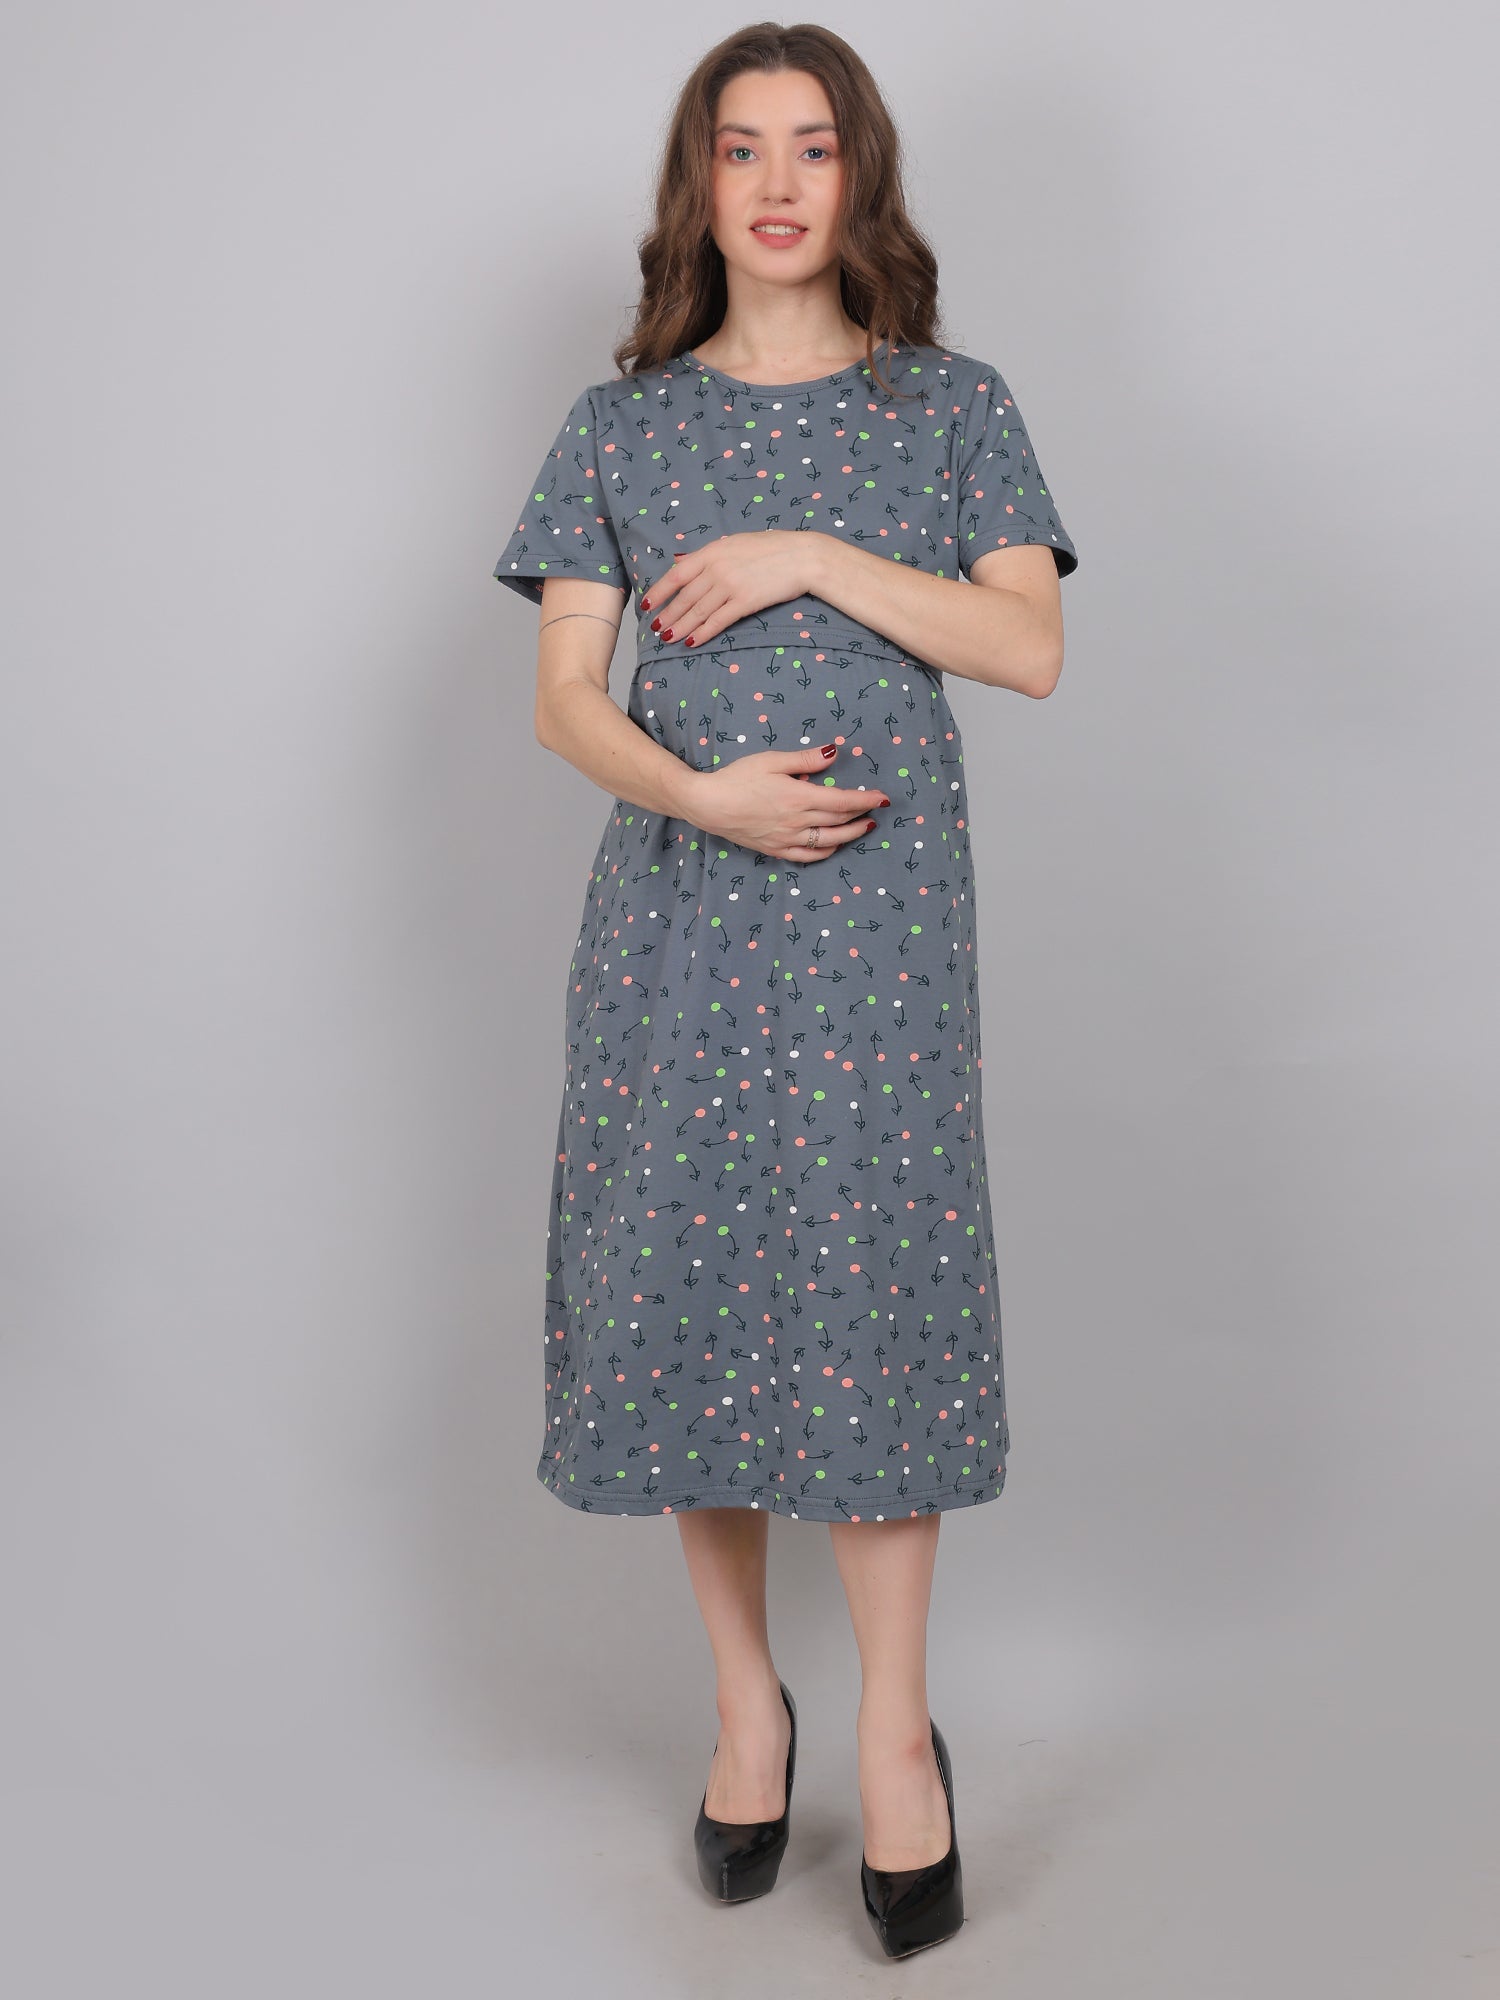 Smoke Grey Knitted Cotton Maternity Loungewear Dress